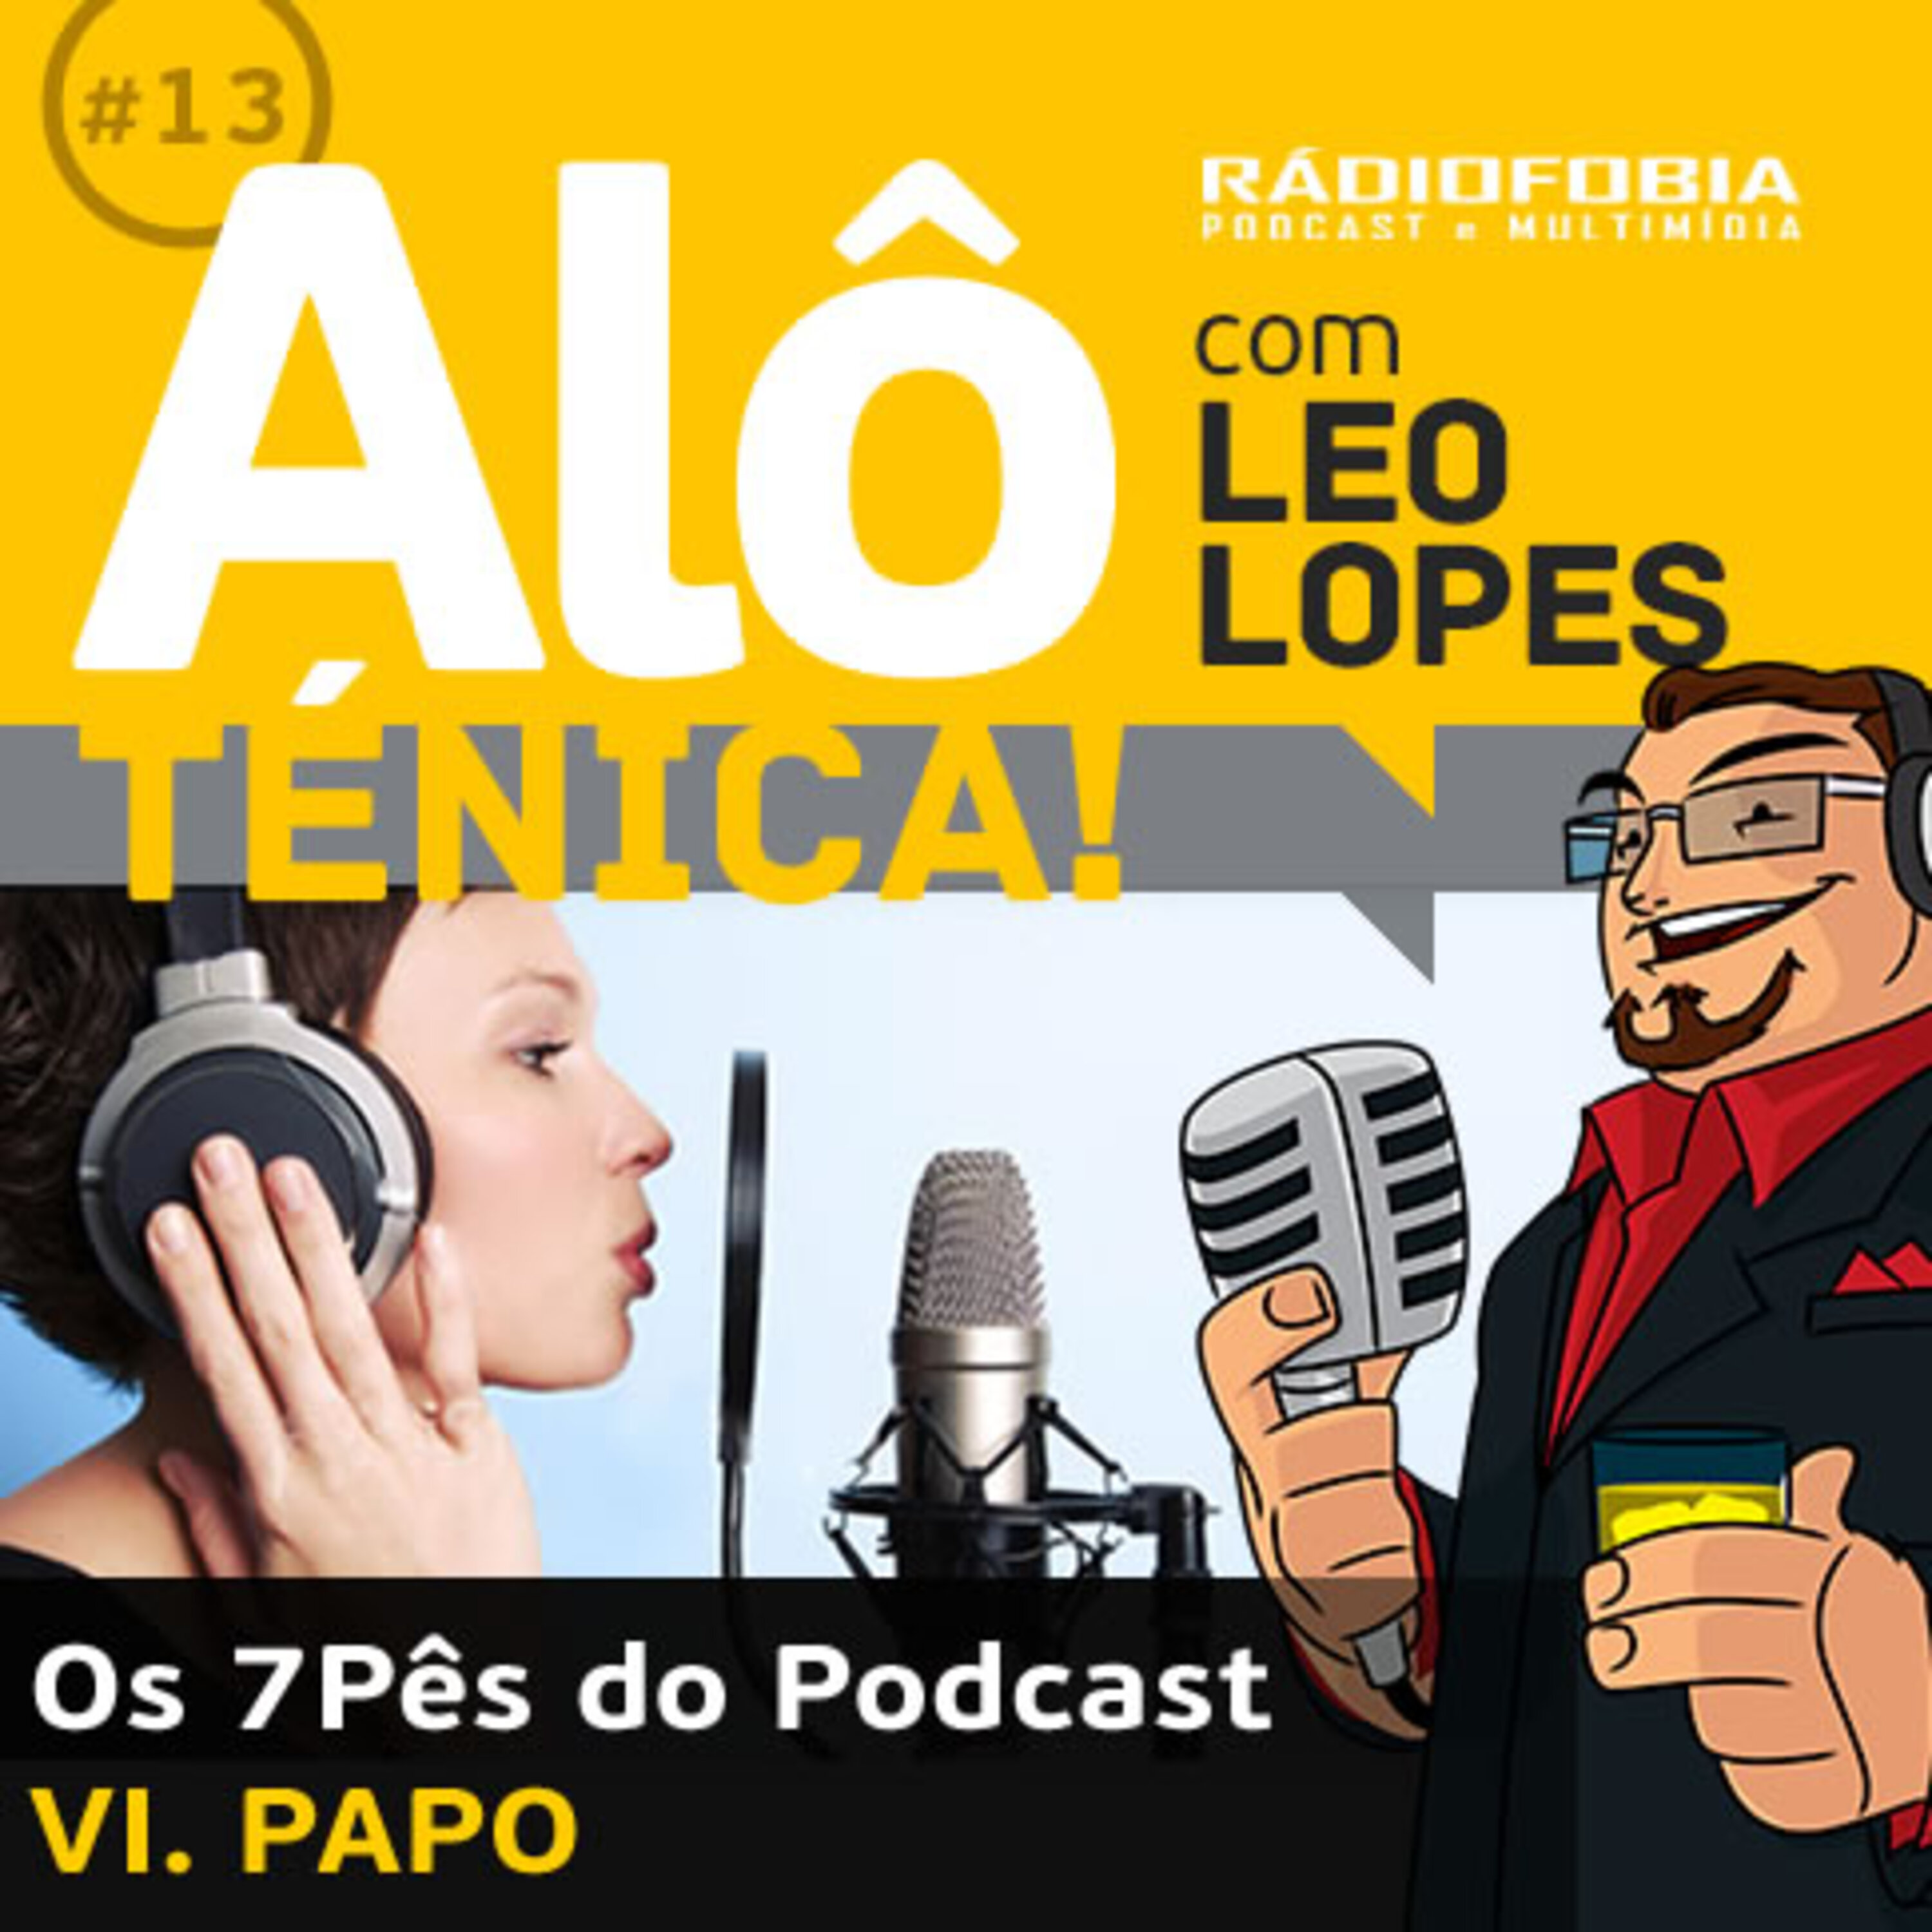 Alô Ténica! #13 – Os 7Pês do Podcast – VI. PAPO